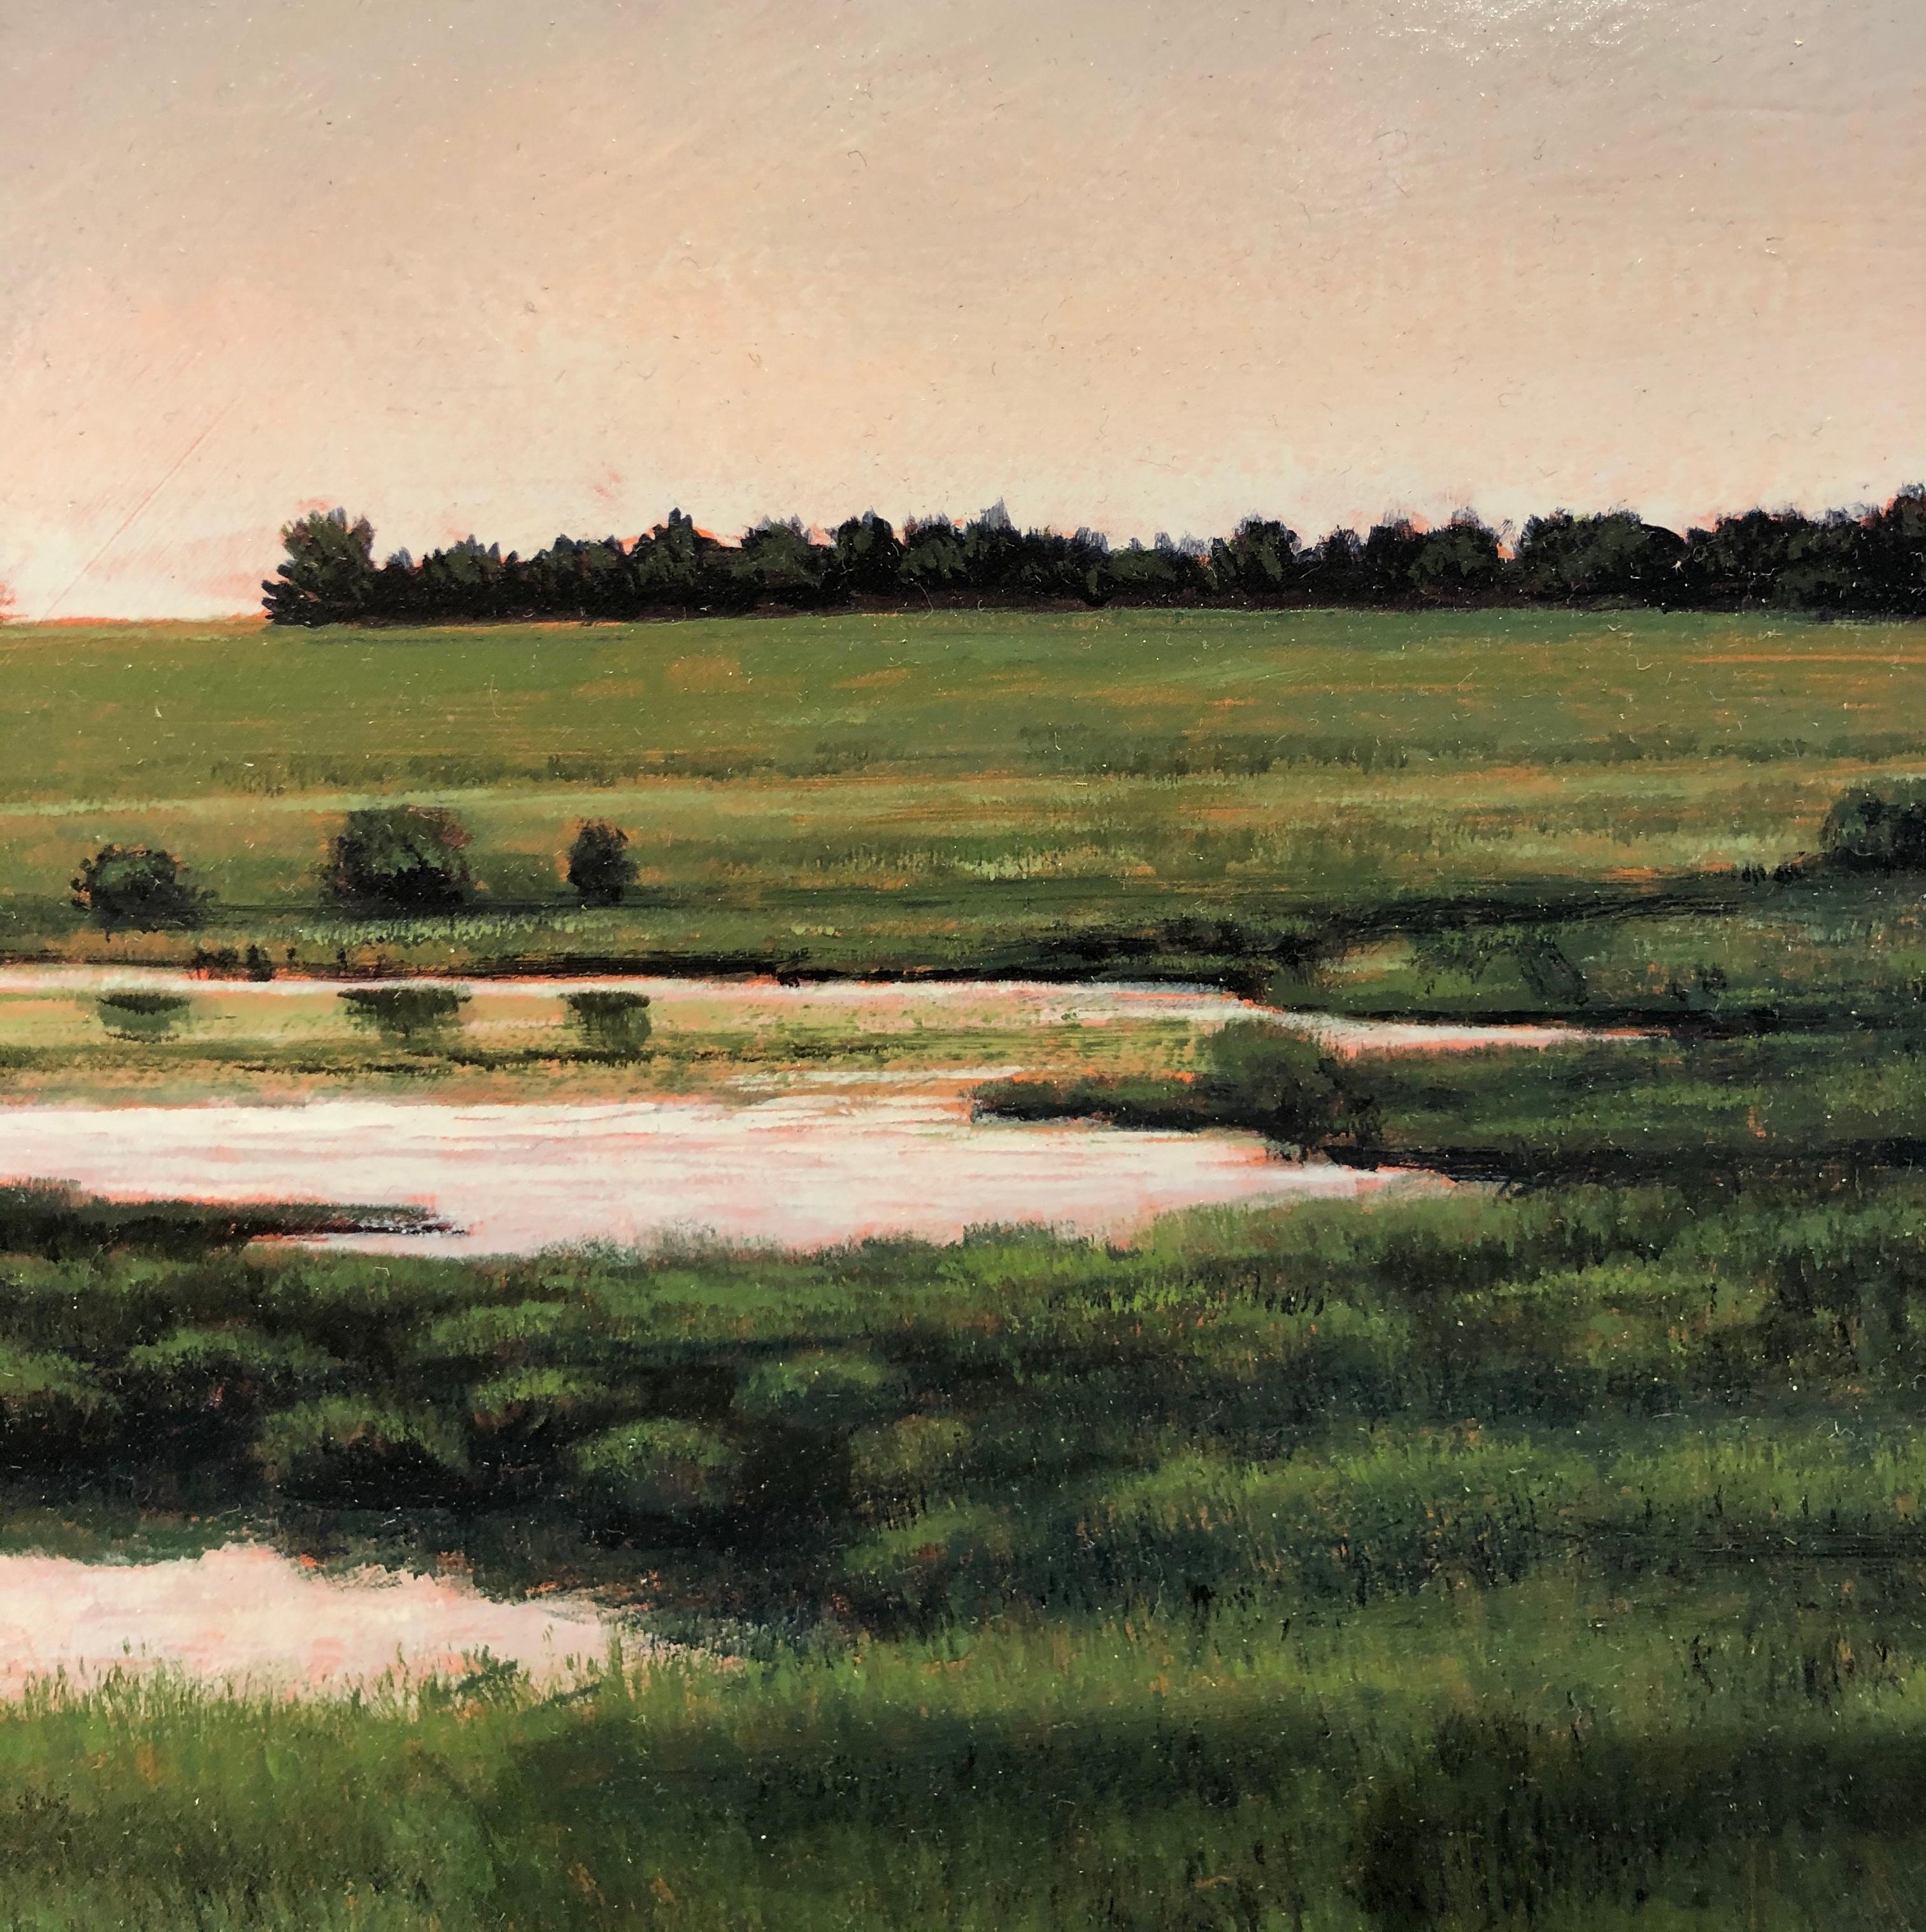 Teich in der Nähe der St. Cloud, MN – ruhige pastorale Landschaft mit schwimmendem Wasser, gerahmt (Grau), Landscape Painting, von Jeff Aeling